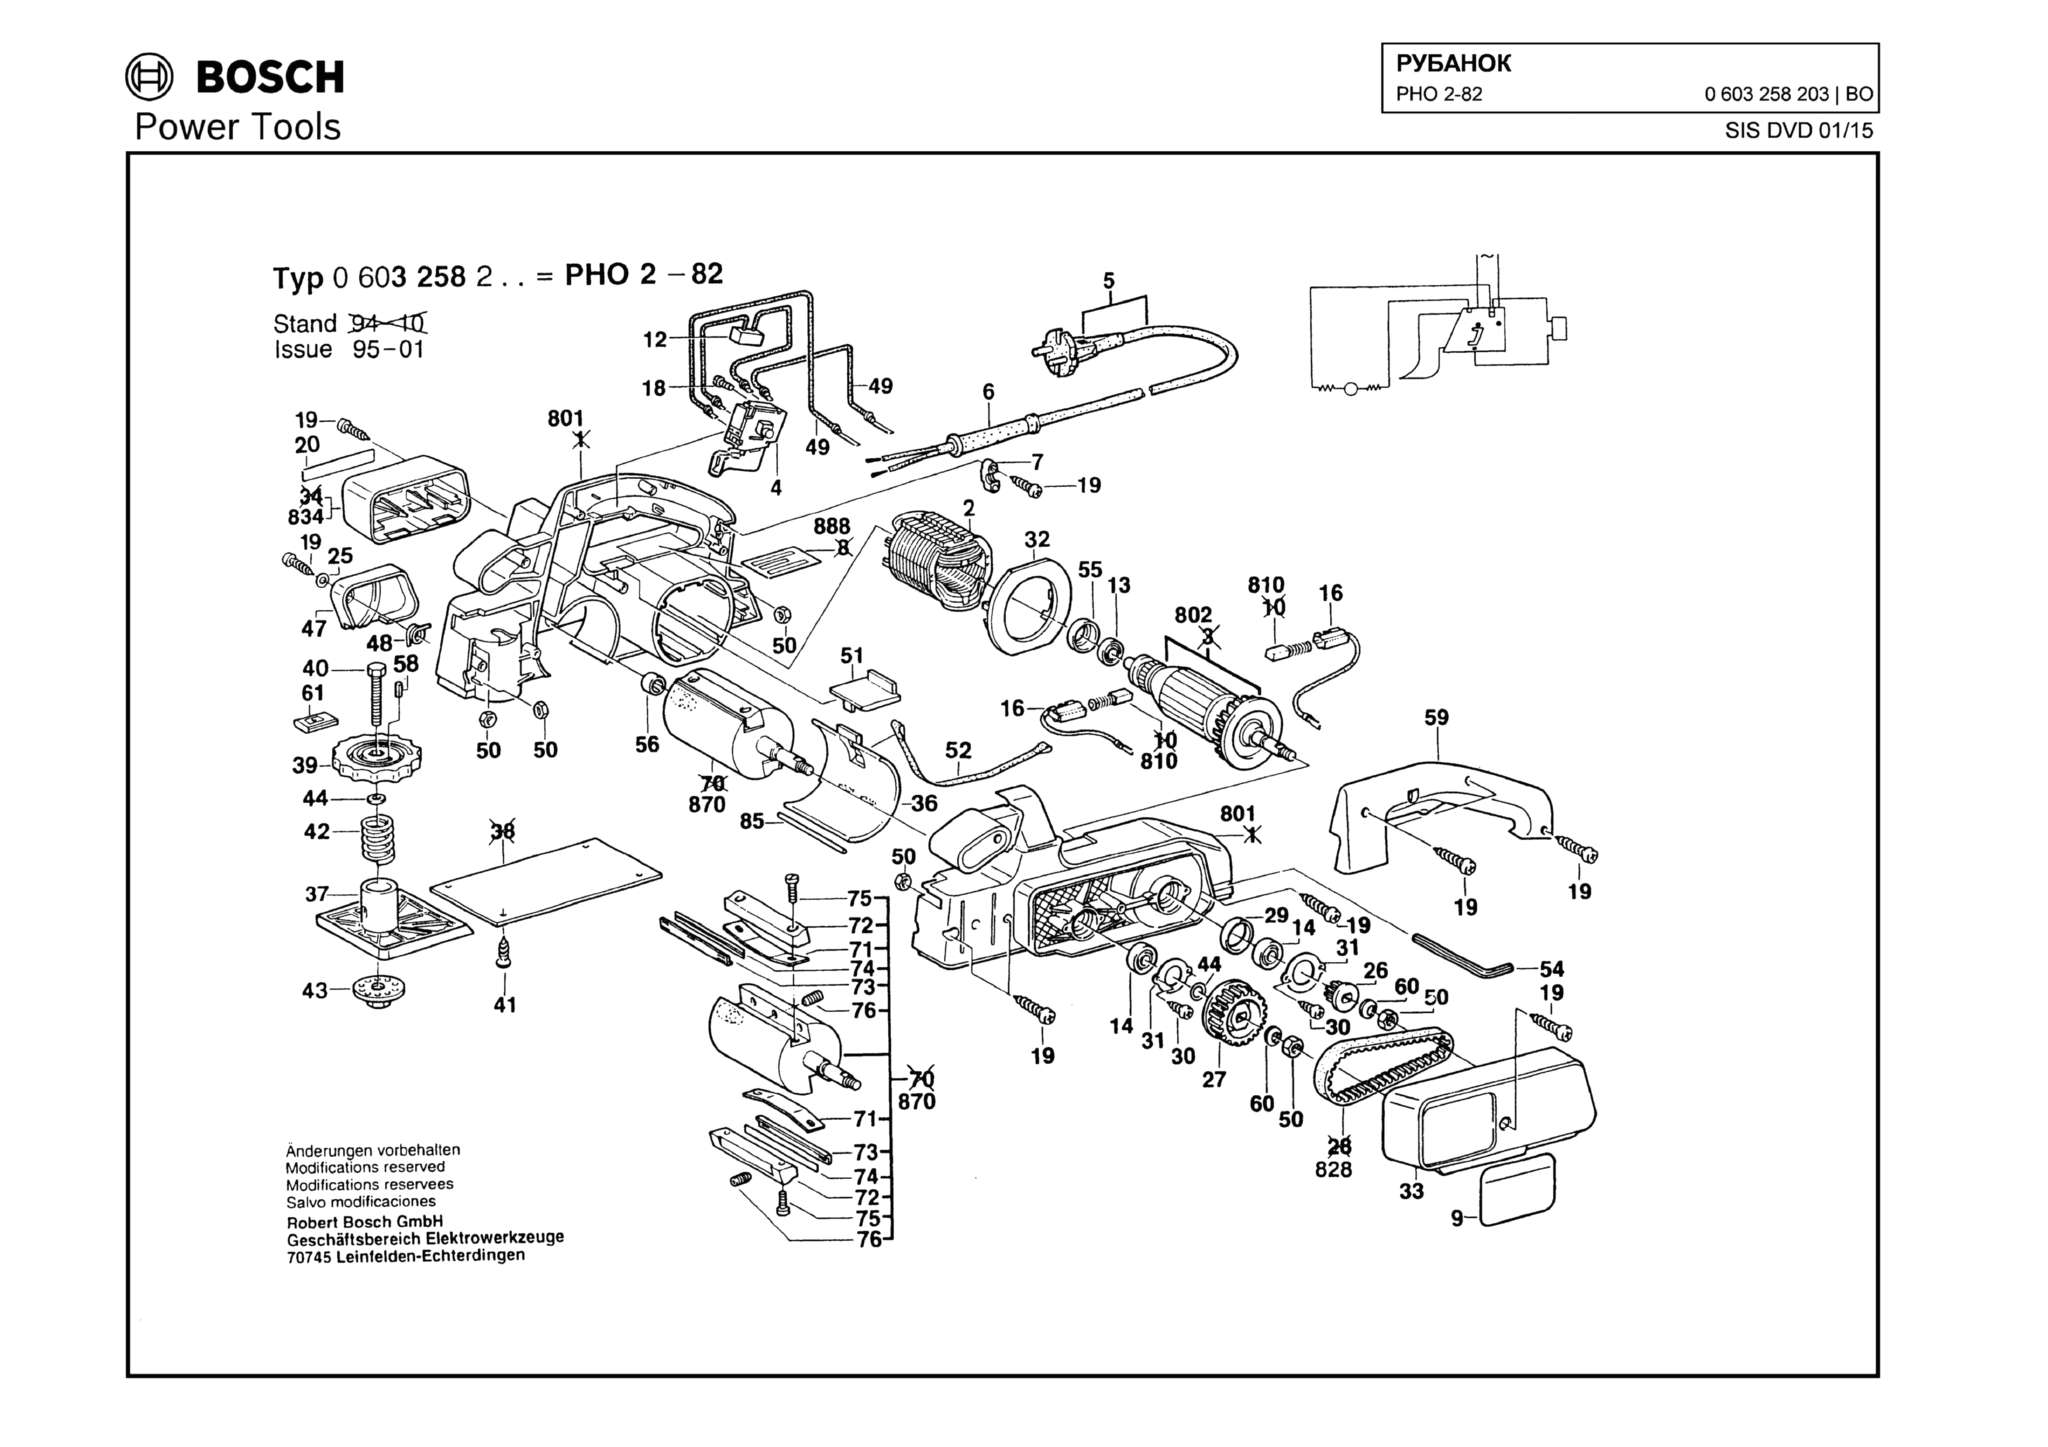 Запчасти, схема и деталировка Bosch PHO 2-82 (ТИП 0603258203)